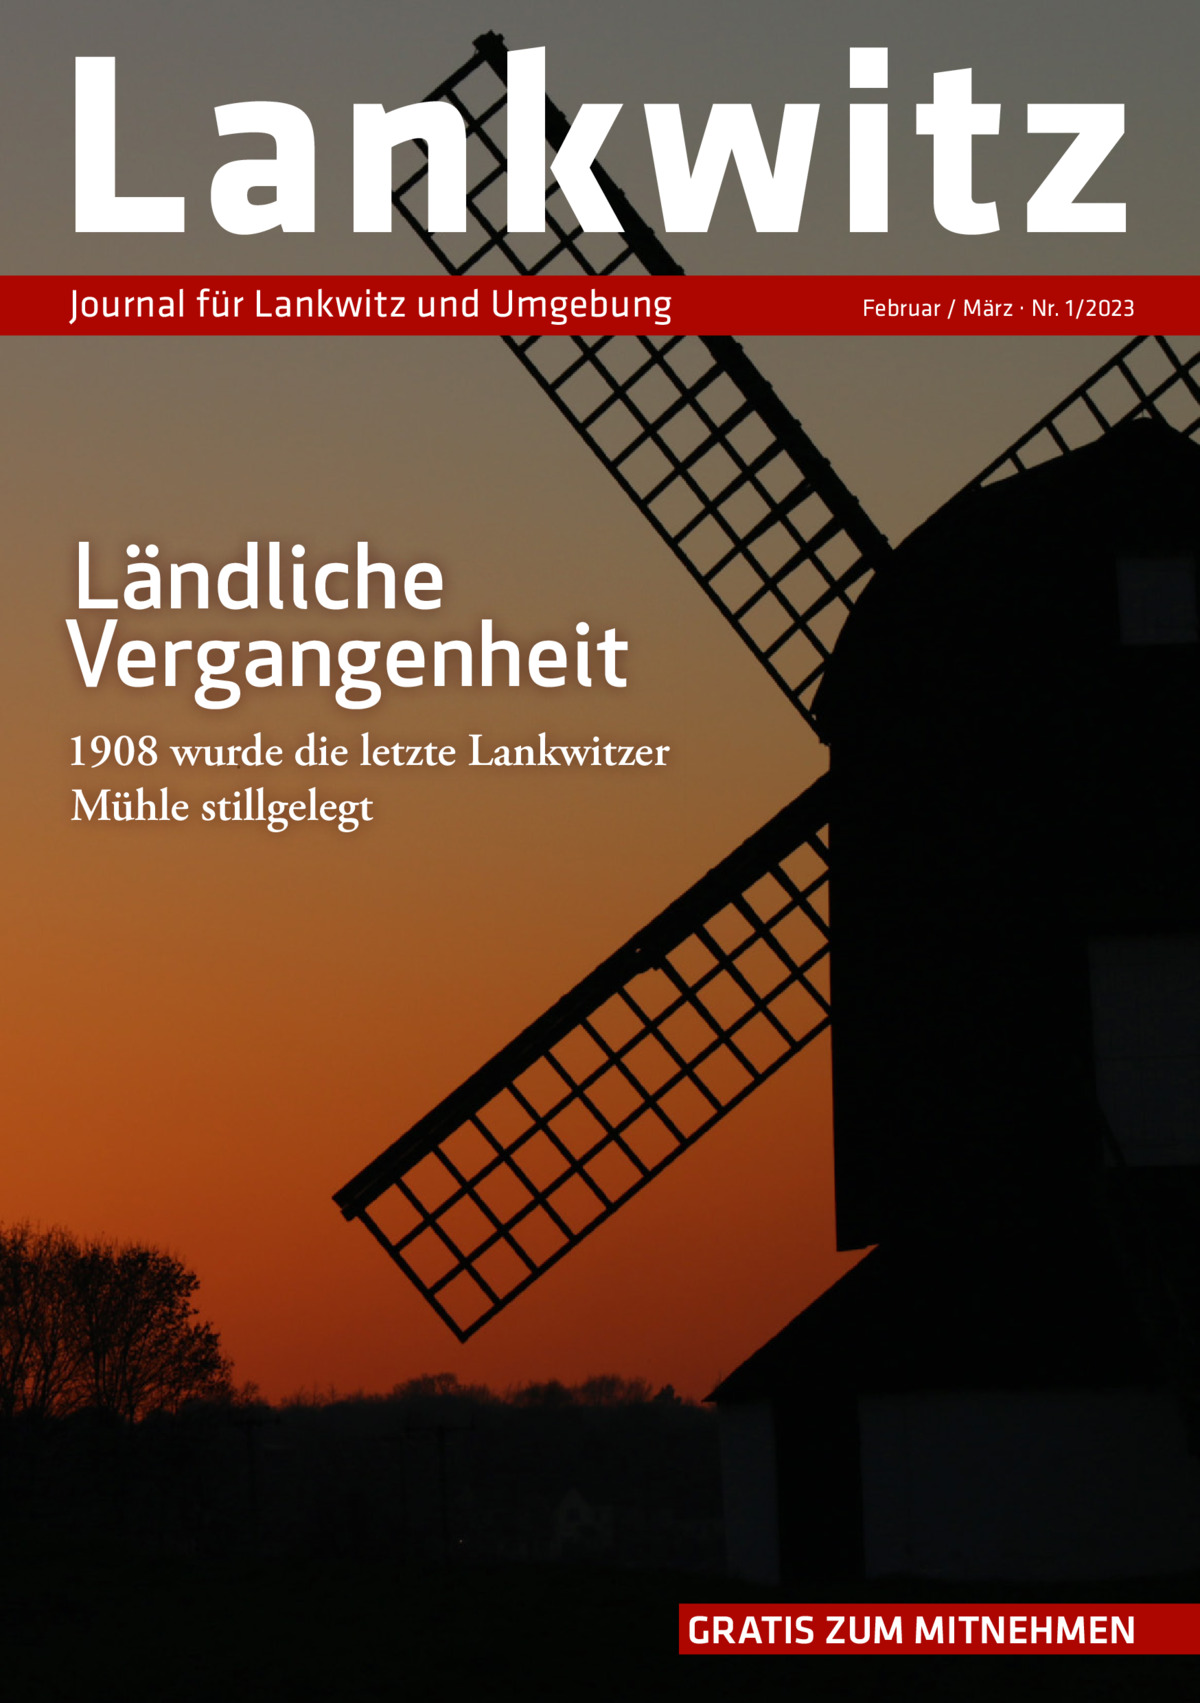 Lankwitz Journal für Lankwitz und Umgebung  Februar / März · Nr. 1/2023  Ländliche Vergangenheit 1908 wurde die letzte Lankwitzer Mühle stillgelegt  GRATIS ZUM MITNEHMEN